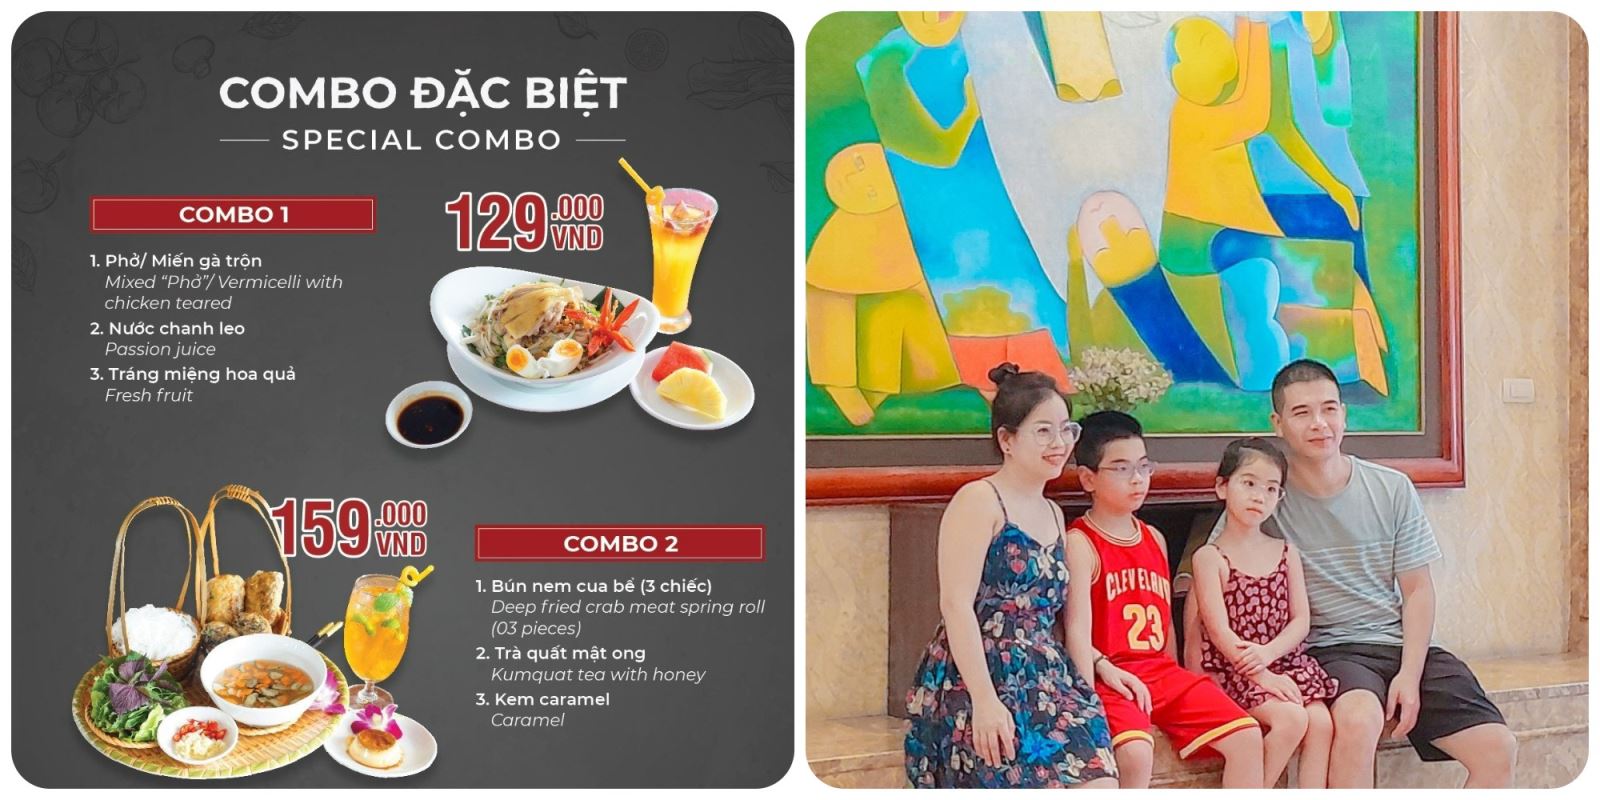 A25 Food Review: Combo Hương Vị Tình Thân Tại Khách Sạn A25 Luxury 684 Minh Khai